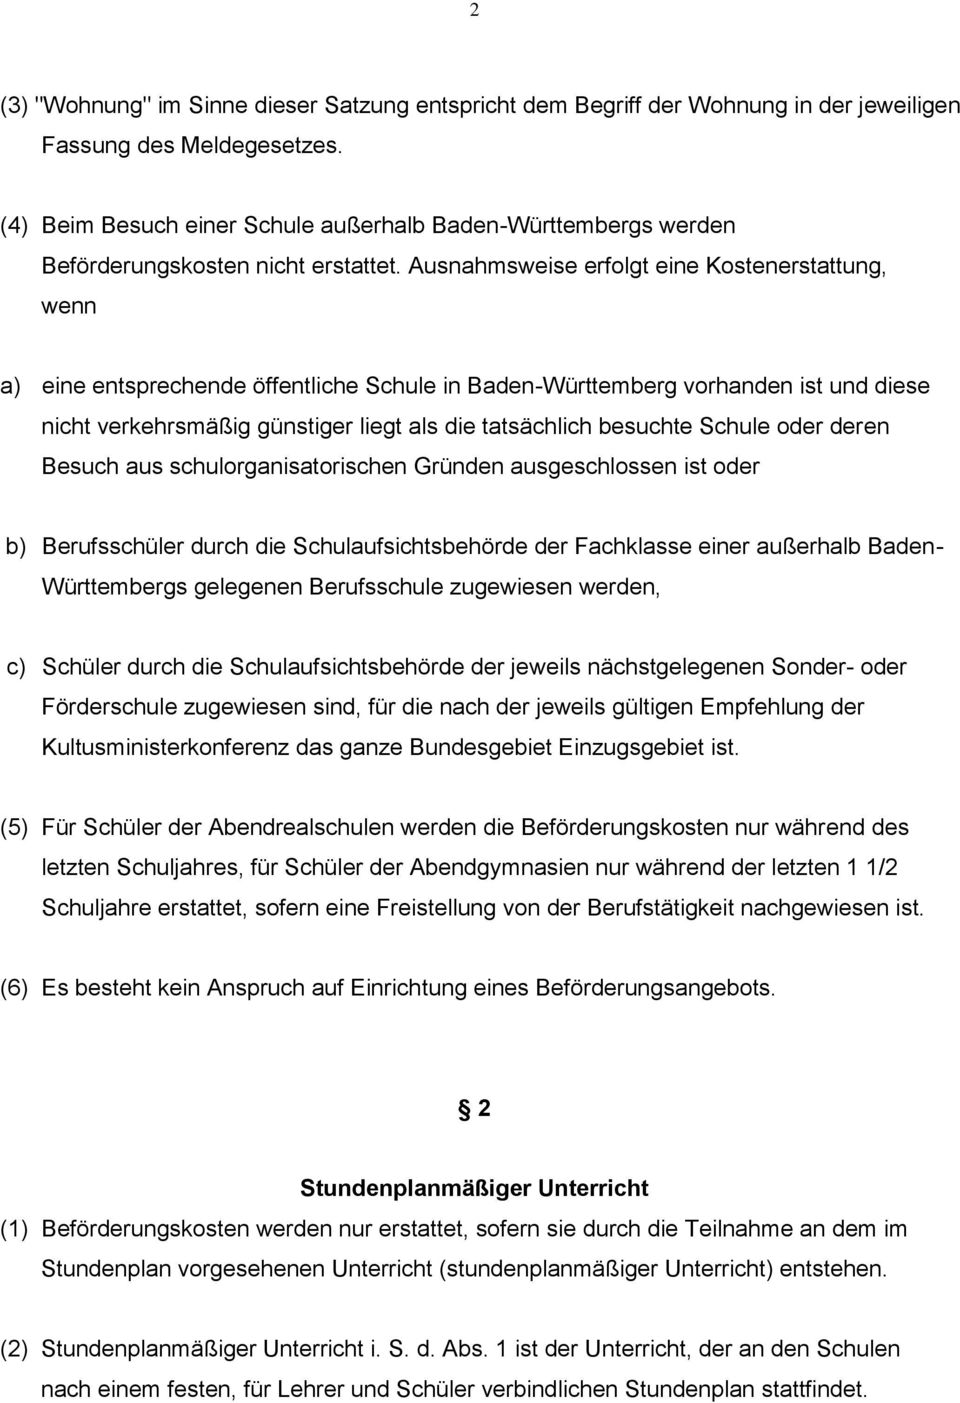 Ausnahmsweise erfolgt eine Kostenerstattung, wenn a) eine entsprechende öffentliche Schule in Baden-Württemberg vorhanden ist und diese nicht verkehrsmäßig günstiger liegt als die tatsächlich